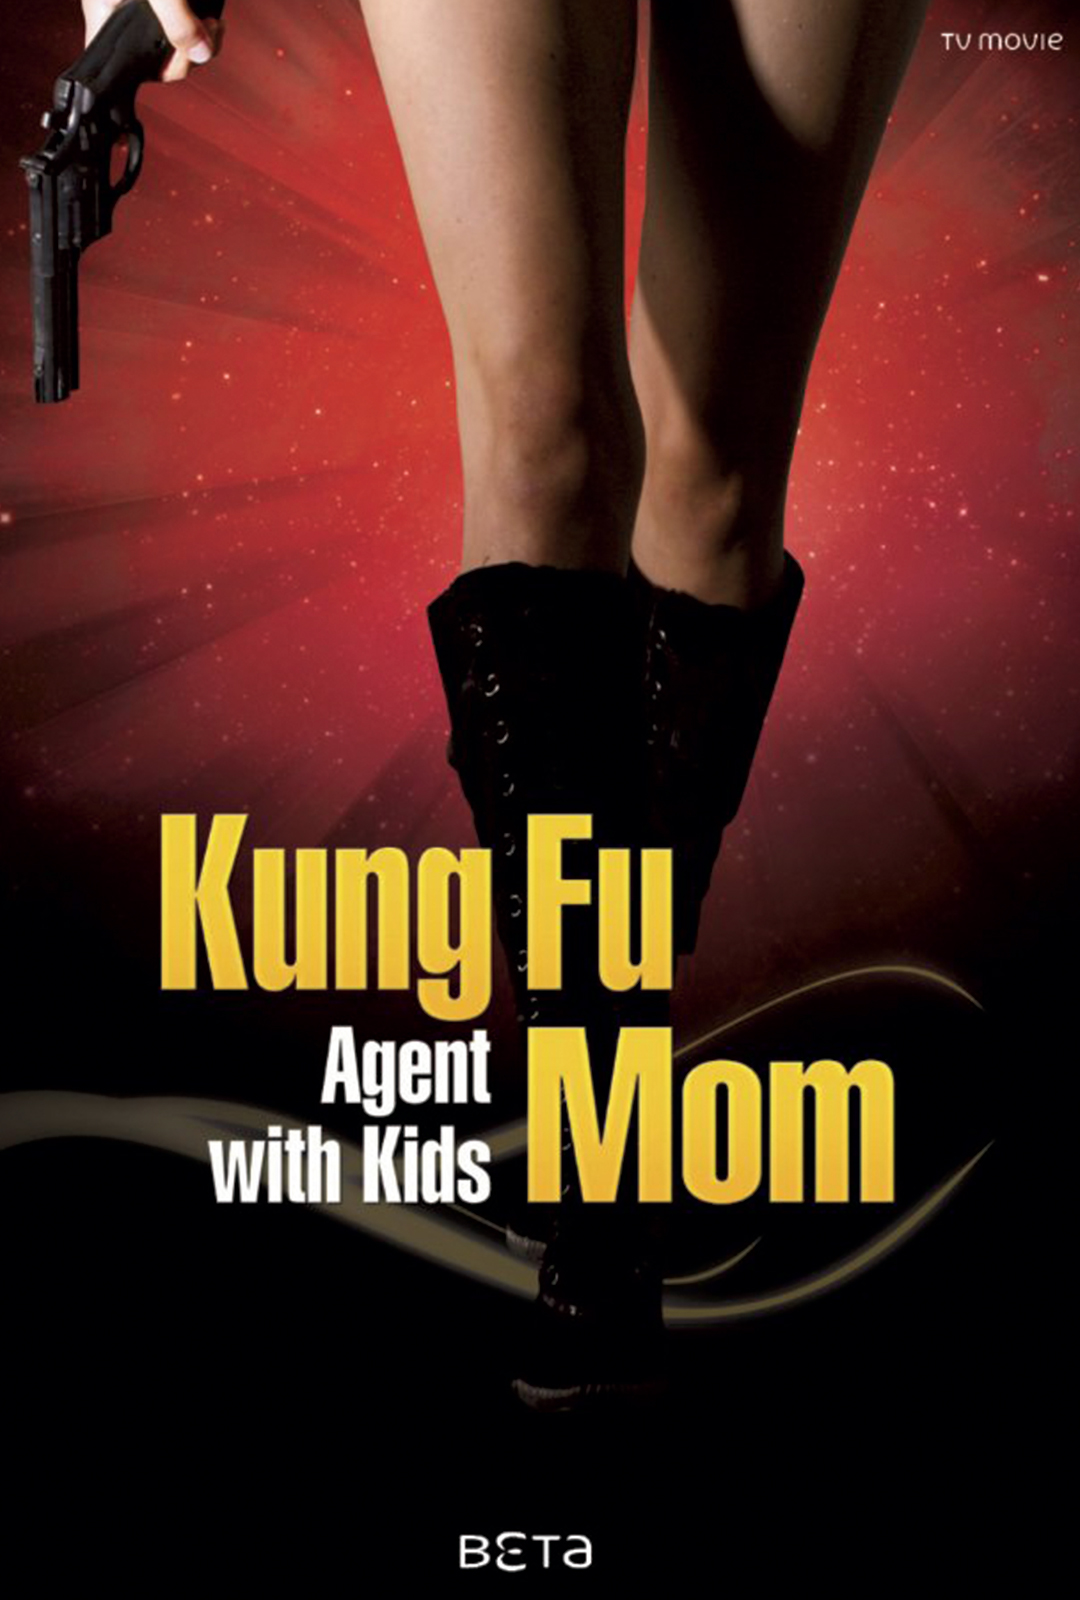 功夫老妈 Kung-Fu Mom